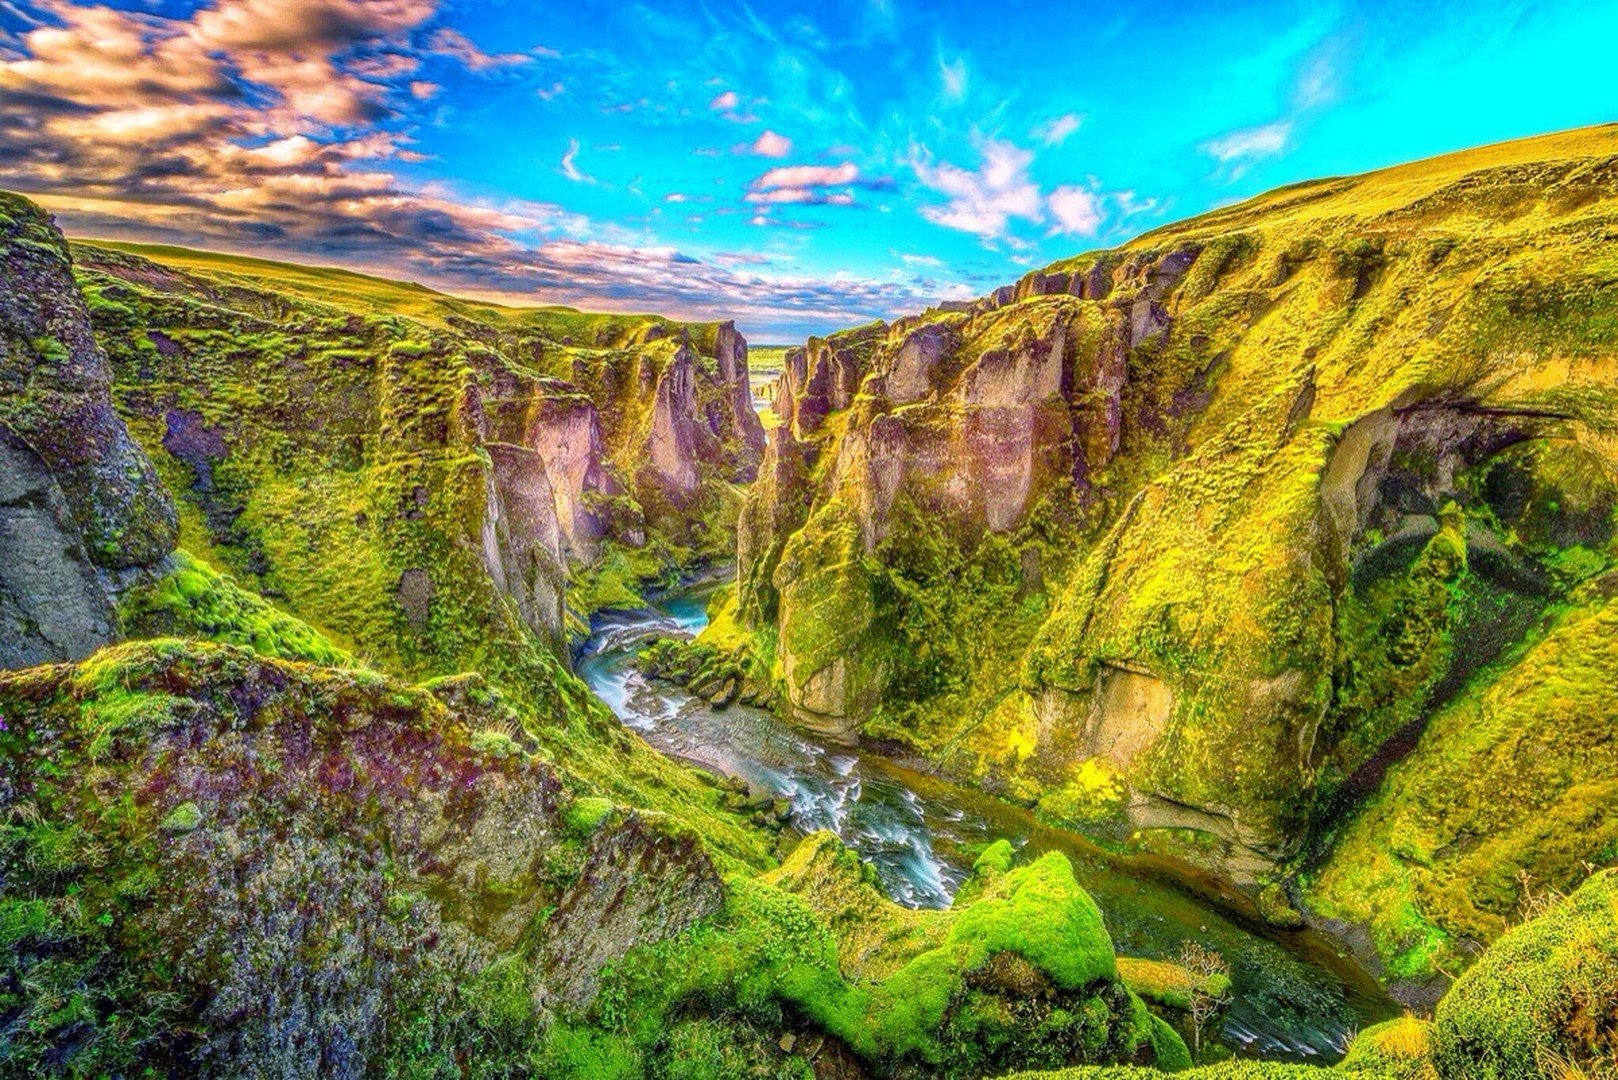 Места на планете. Каньон Фьядрарглйуфур Исландия. Каньоны Исландии Фьядpapглйуфуp. Ущелье Фьядрарглйуфур. Каньон в Ирландии.